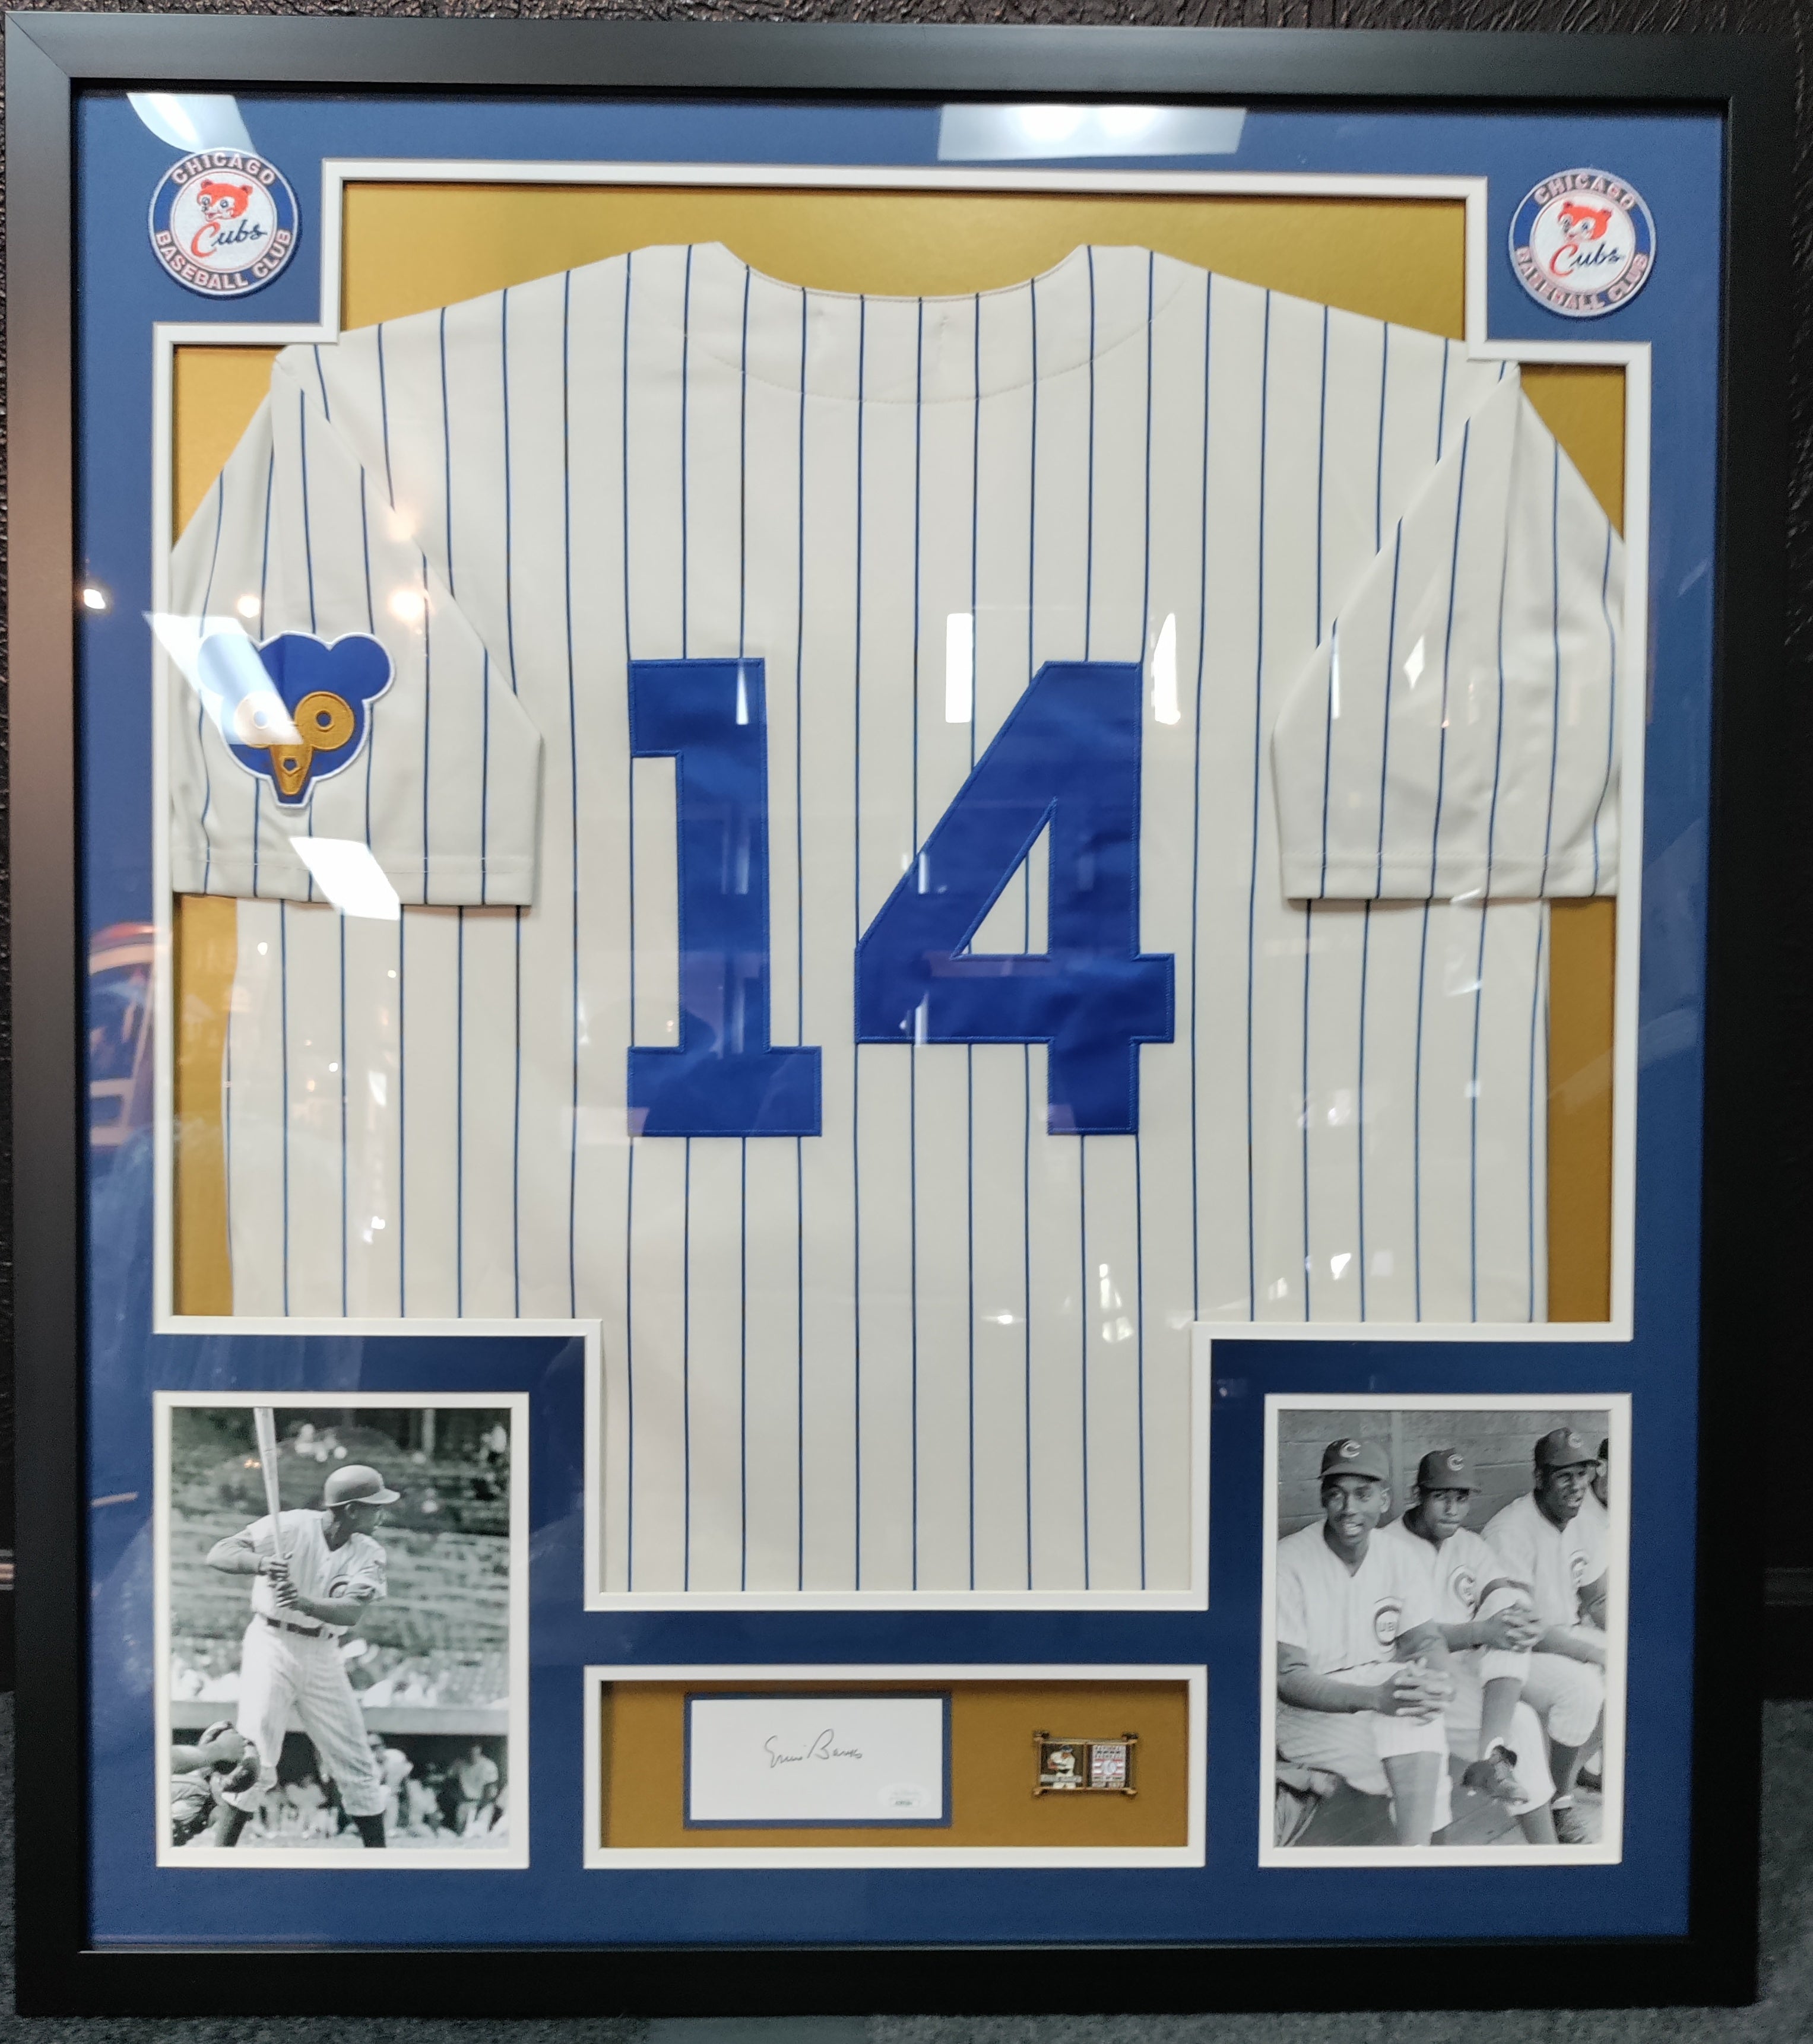 Ernie Banks Autographed Signed Chicago Cubs Framed Jersey 